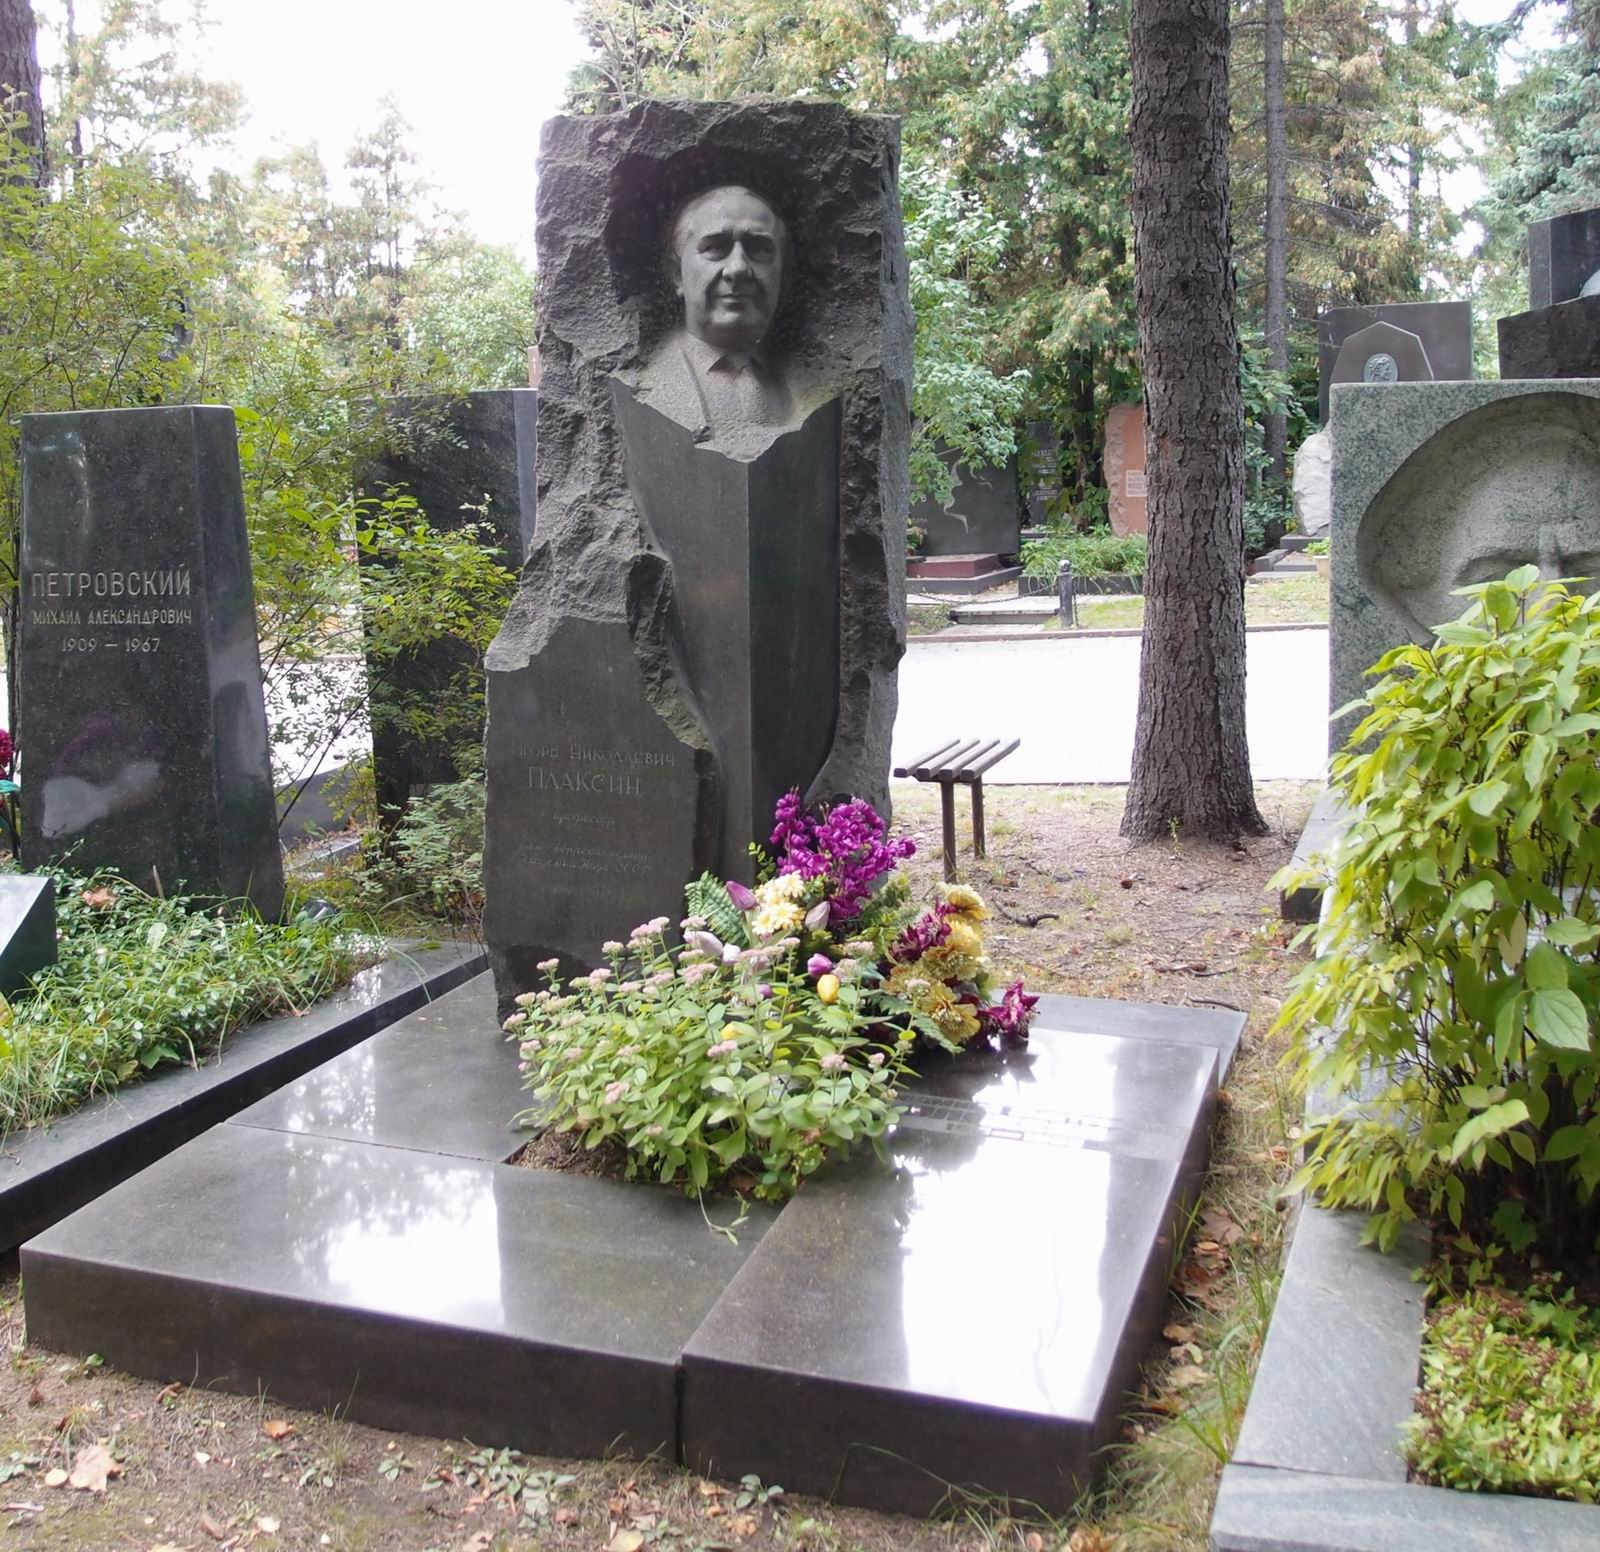 Памятник на могиле Плаксинa И.Н. (1900-1967), ск. А.Елецкий, на Новодевичьем кладбище (6-39-3). Нажмите левую кнопку мыши чтобы увидеть фрагмент памятника.